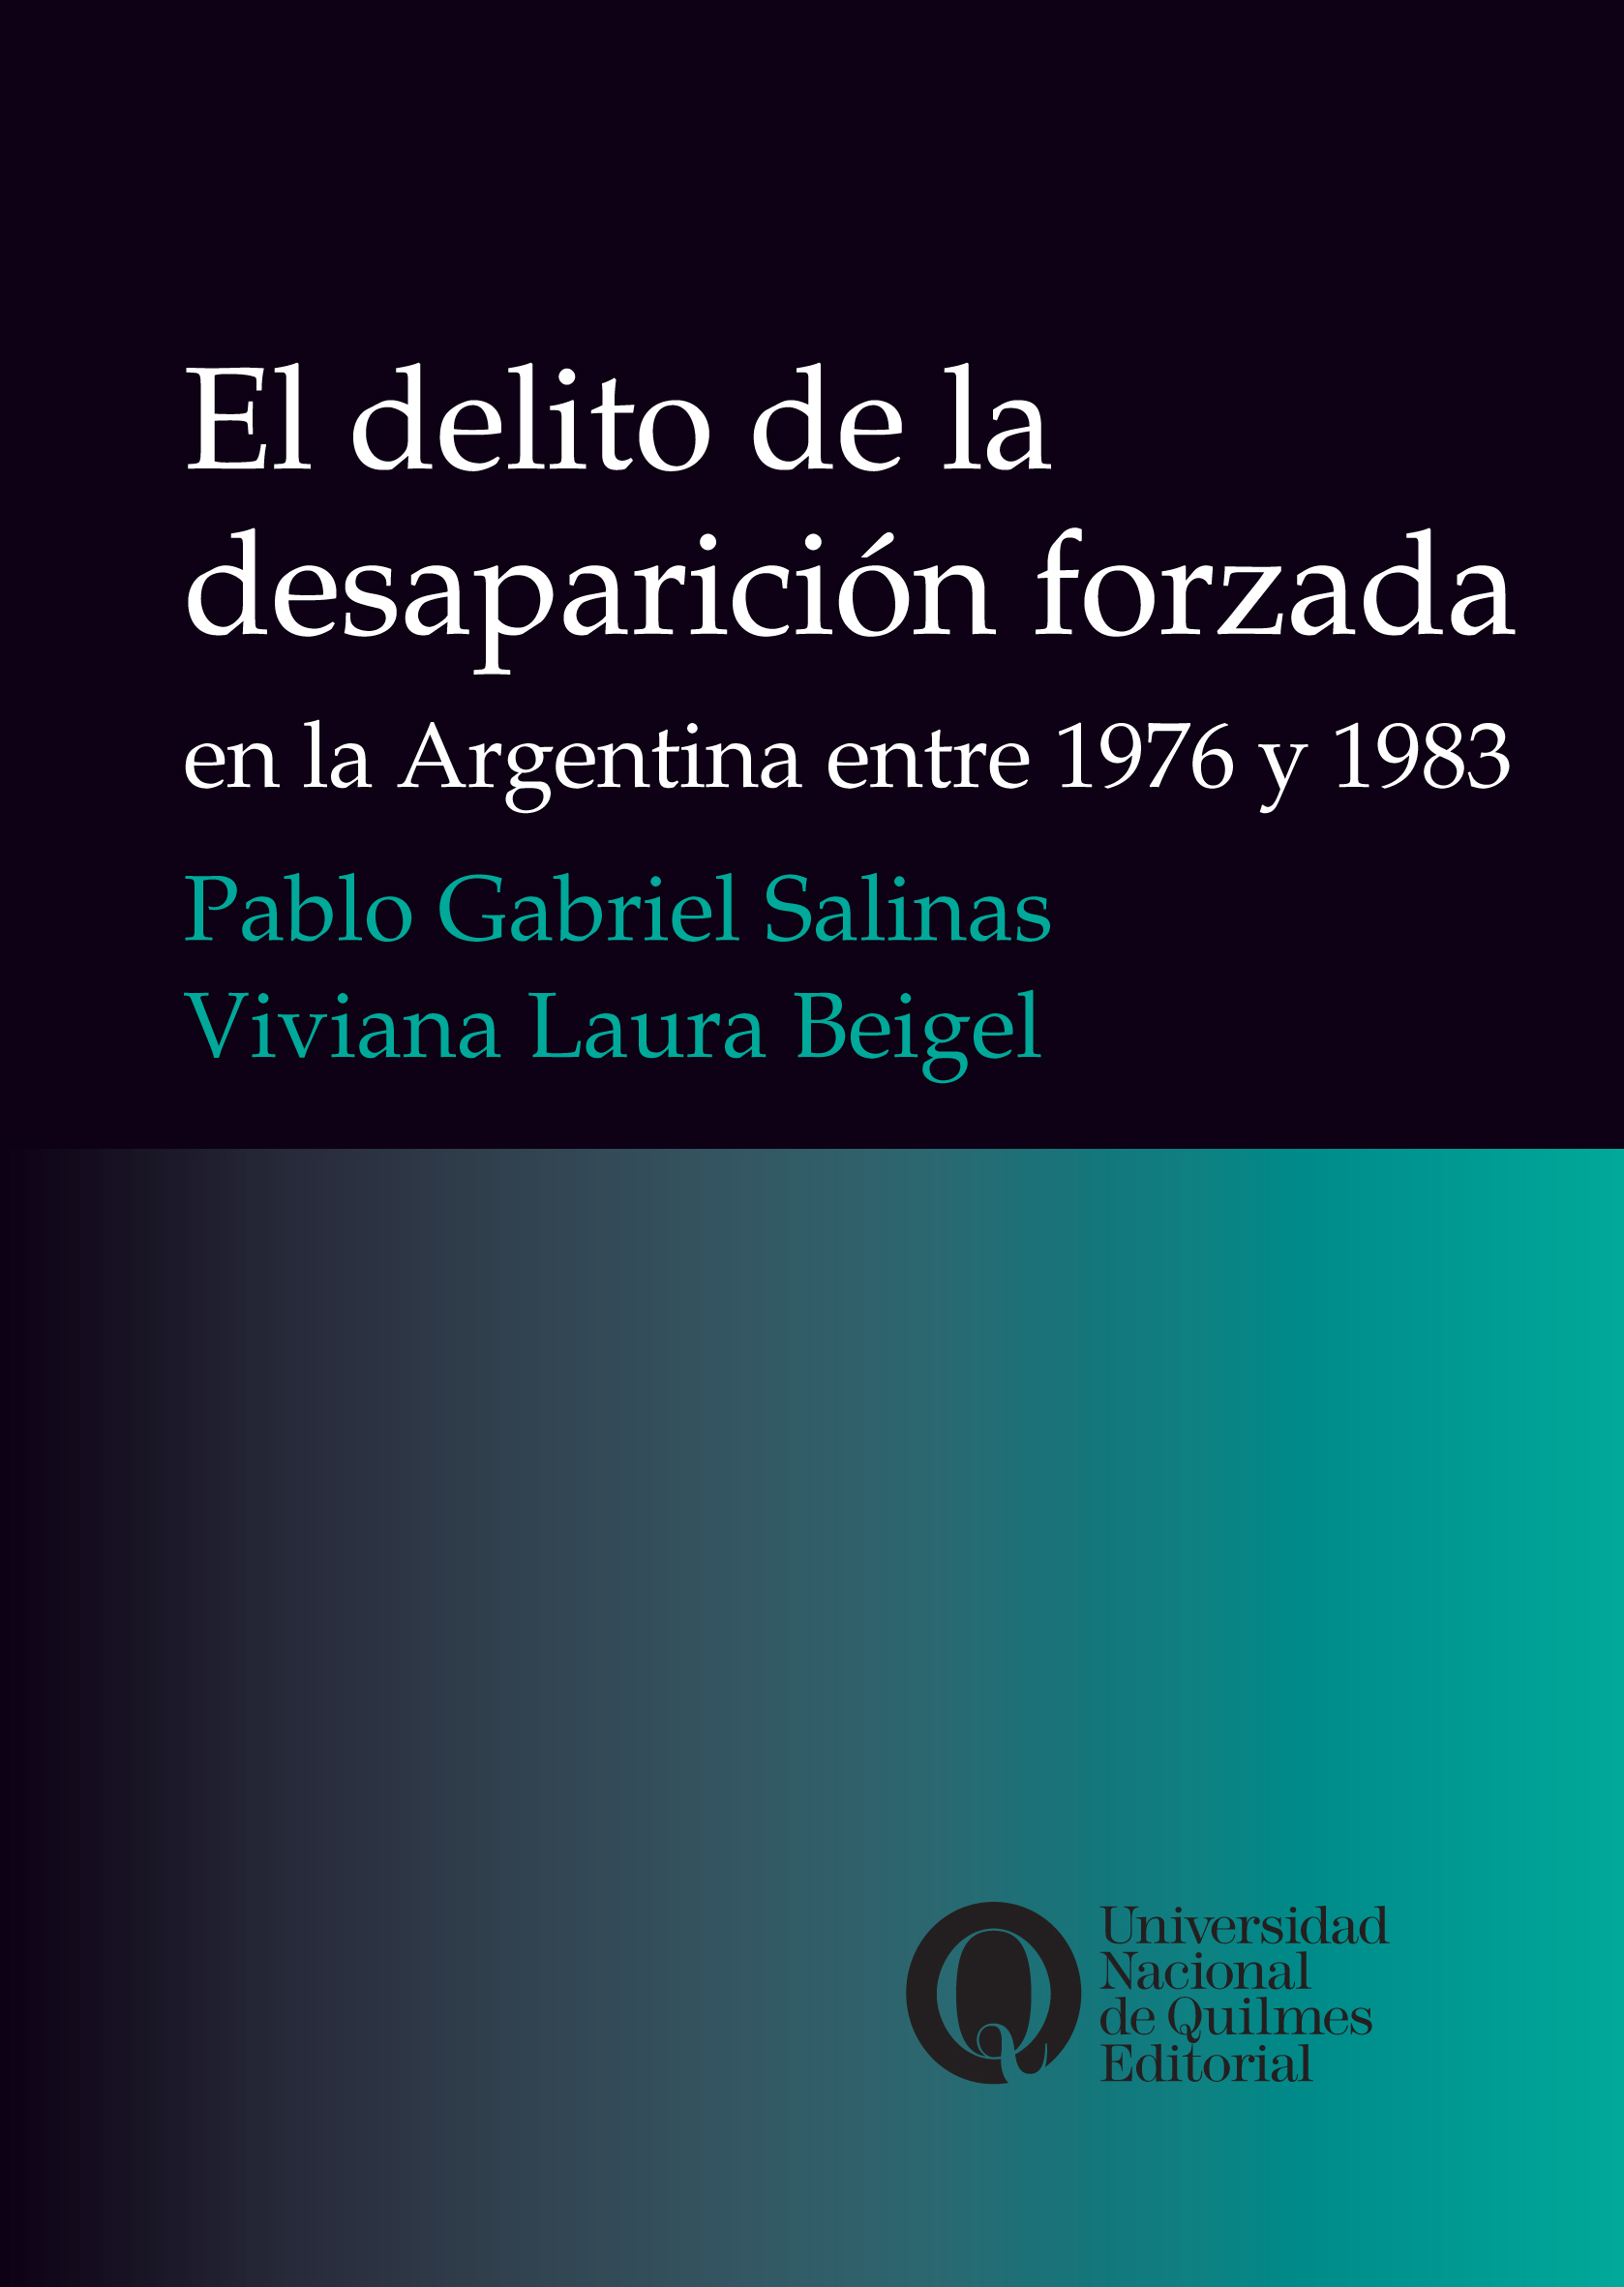 El delito de la desaparición forzada en la Argentina entre 1976 y 1983, de Pablo Gabriel Salinas y Viviana Laura Beigel